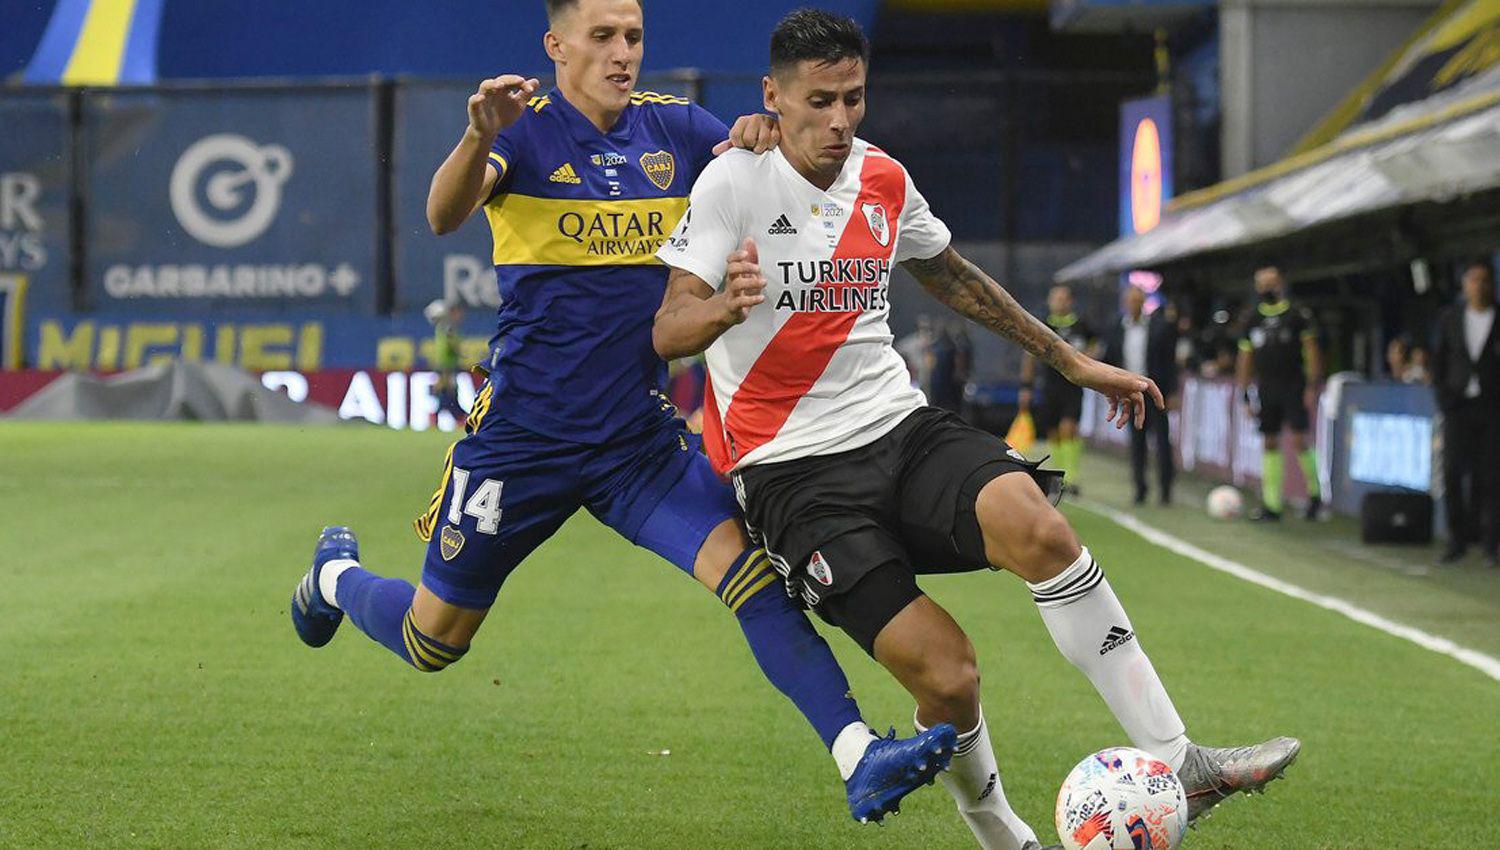 Boca y River volver�n a verse las caras para definir una instancia que les permita avanzar de
cara al futuro Esta vez ser� por la Copa de la Liga Profesional en el estadio de la Bombonera